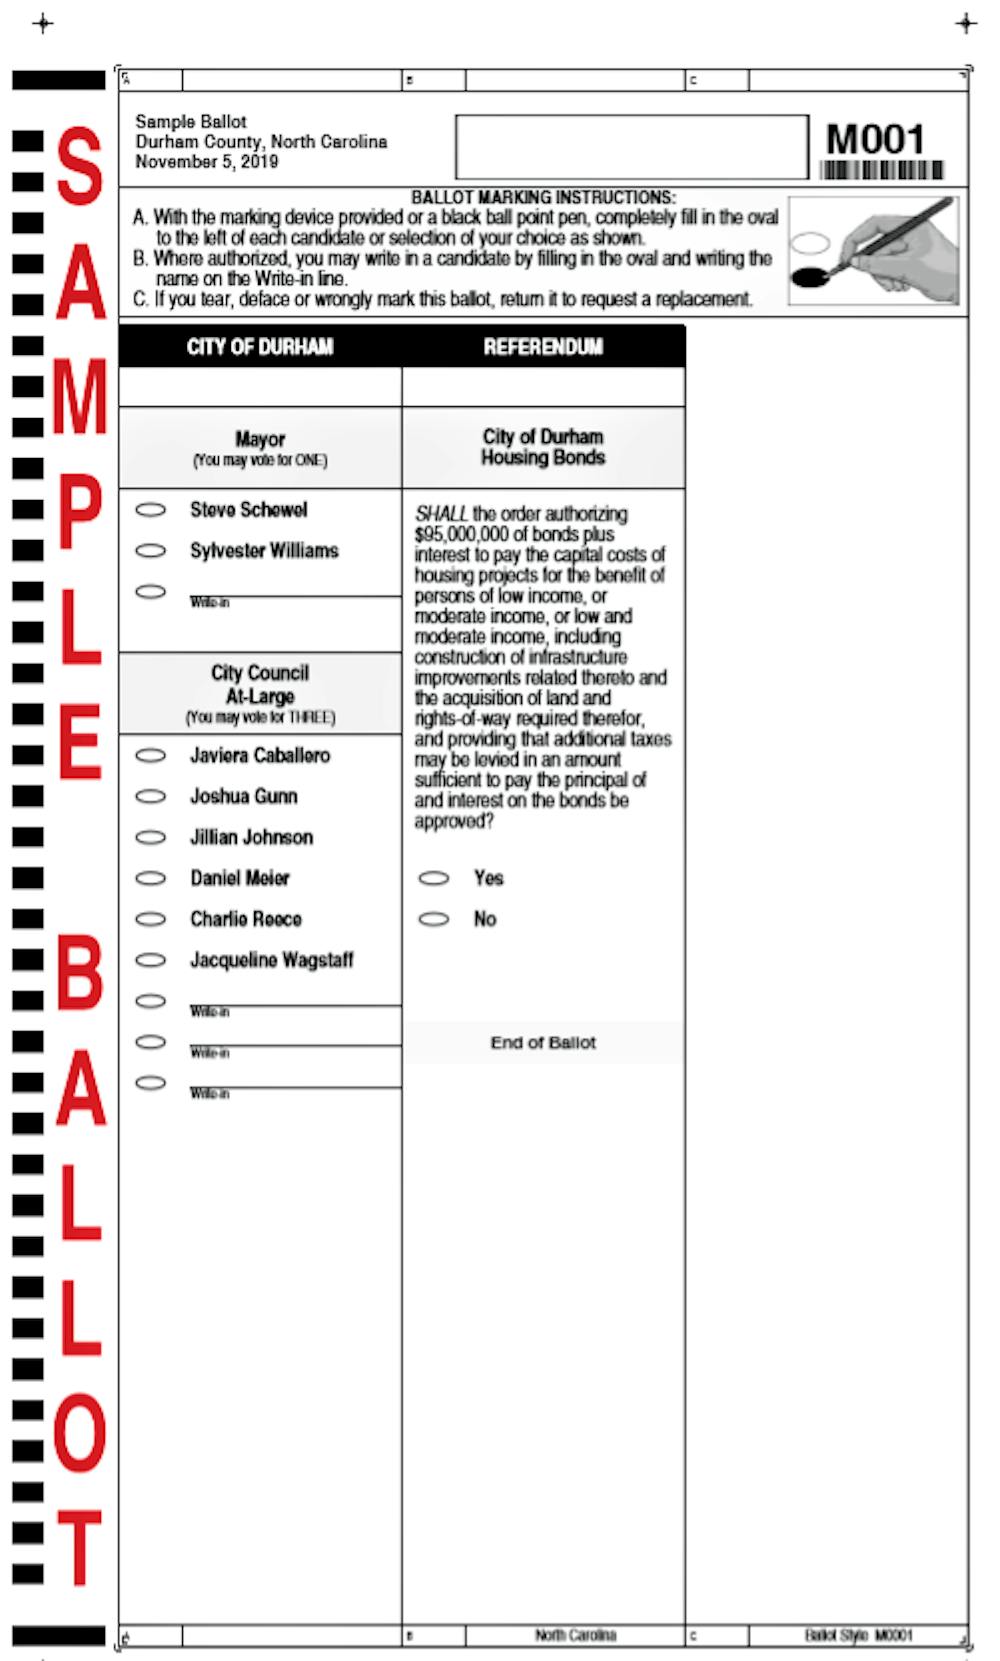 Sample ballot.png